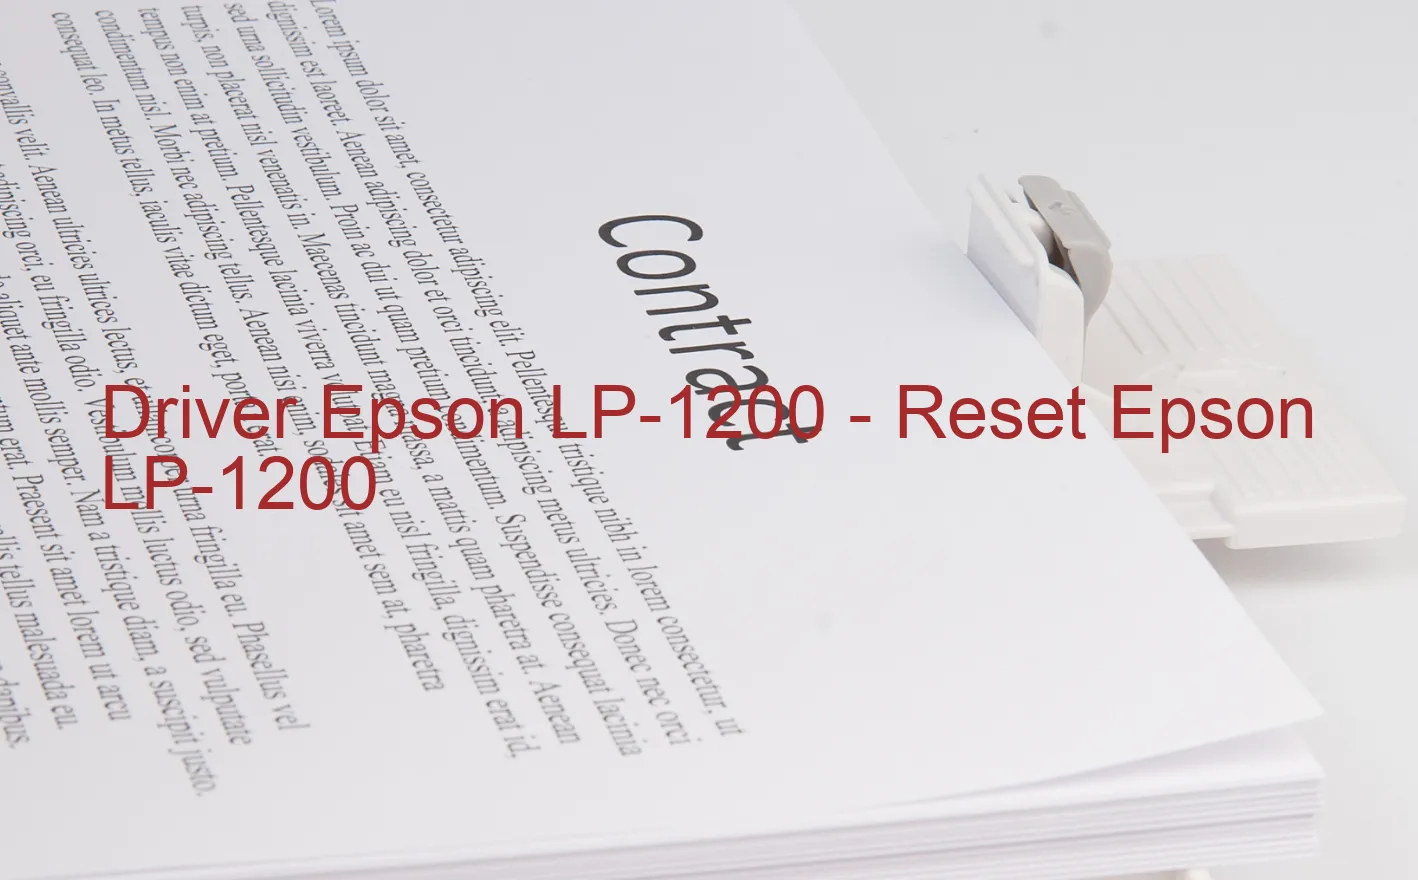 Epson LP-1200のドライバー、Epson LP-1200のリセットソフトウェア